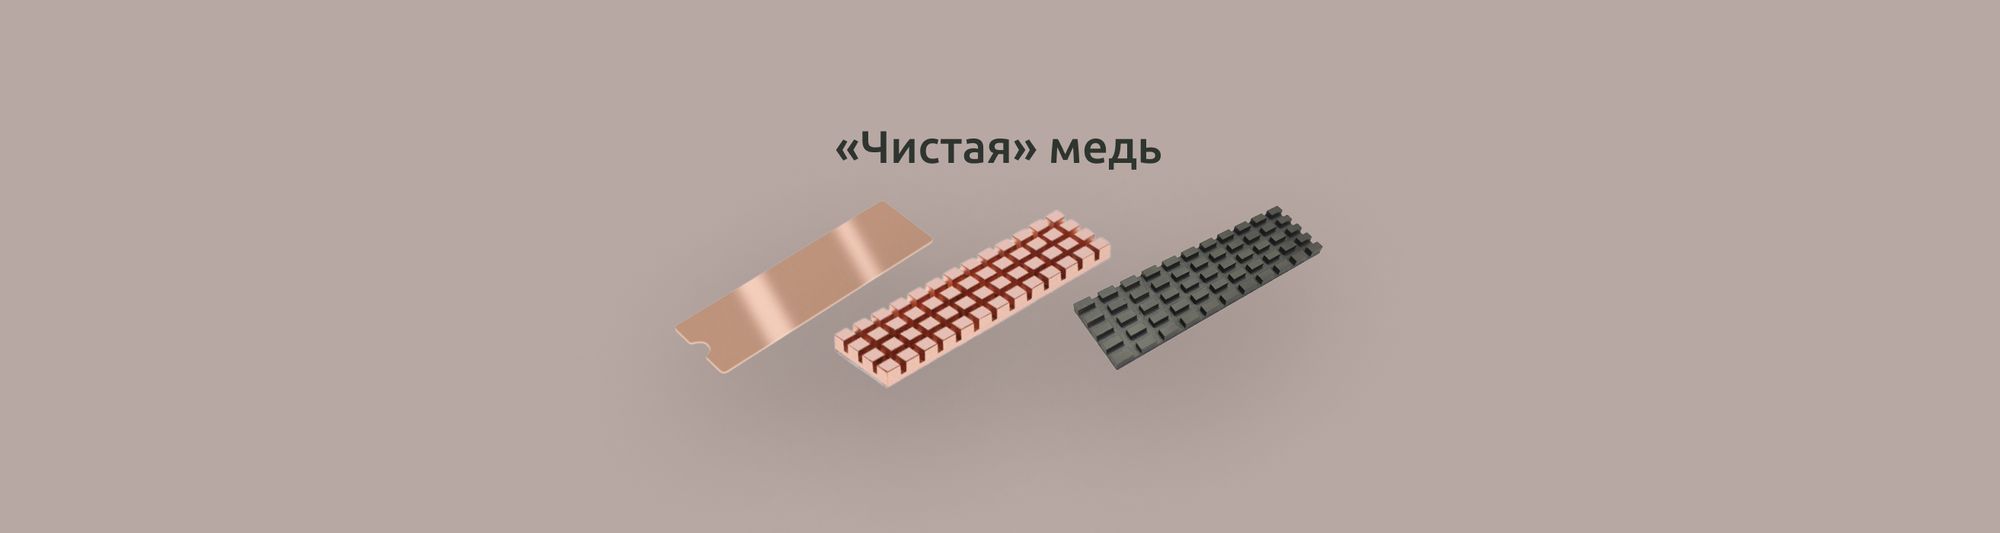 Односторонние радиаторы M.2 SSD из меди